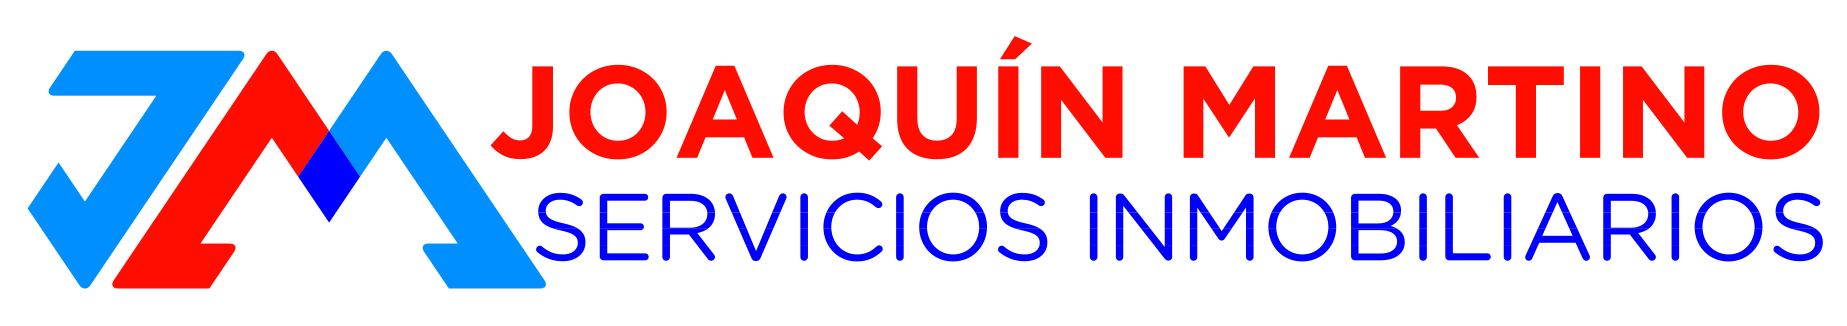 Joaquín Martino Servicios Inmobiliarios